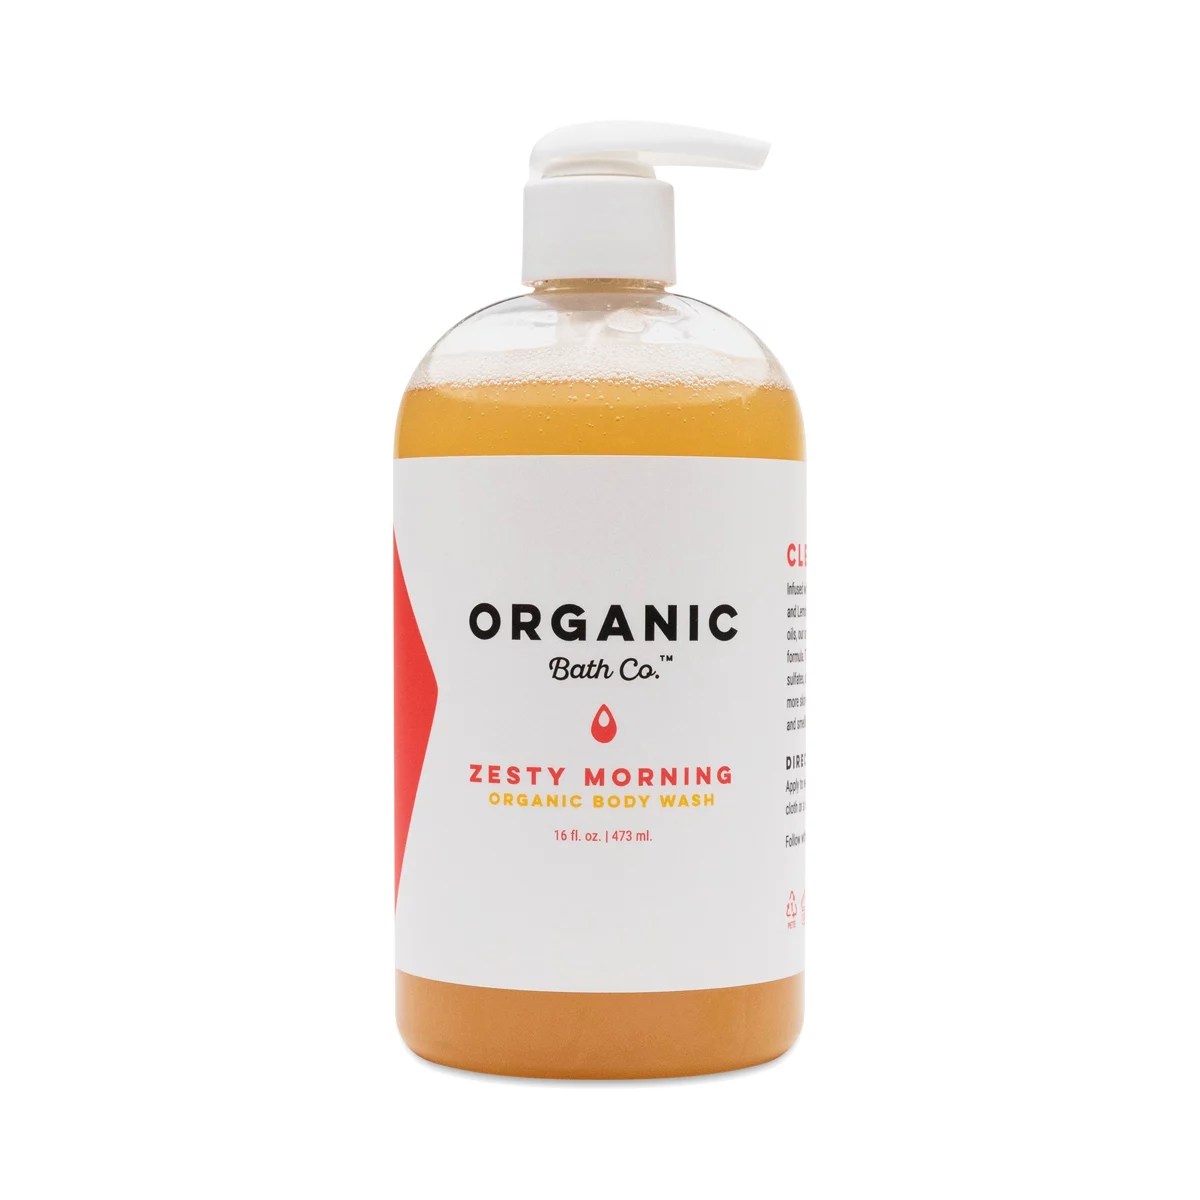 Organic Bath Co. Zesty Morning Organic Body Wash